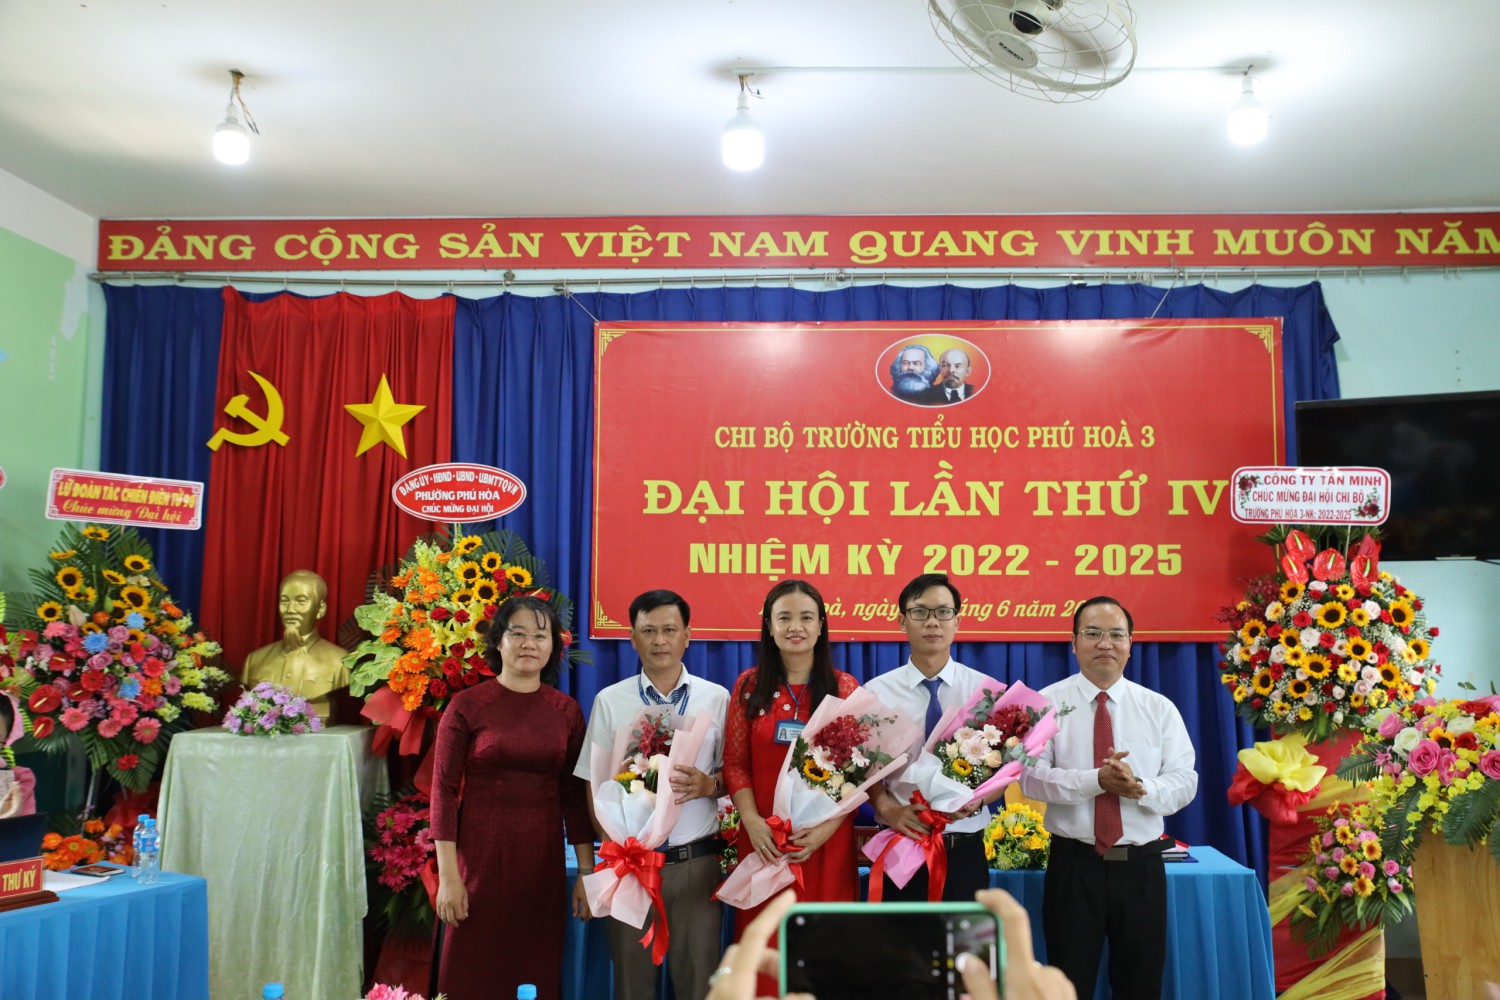 Chi bộ trường Tiểu học Phú Hòa 3 tổ chức thành công Đại hội lần thứ IV nhiệm kỳ 2022 - 2025